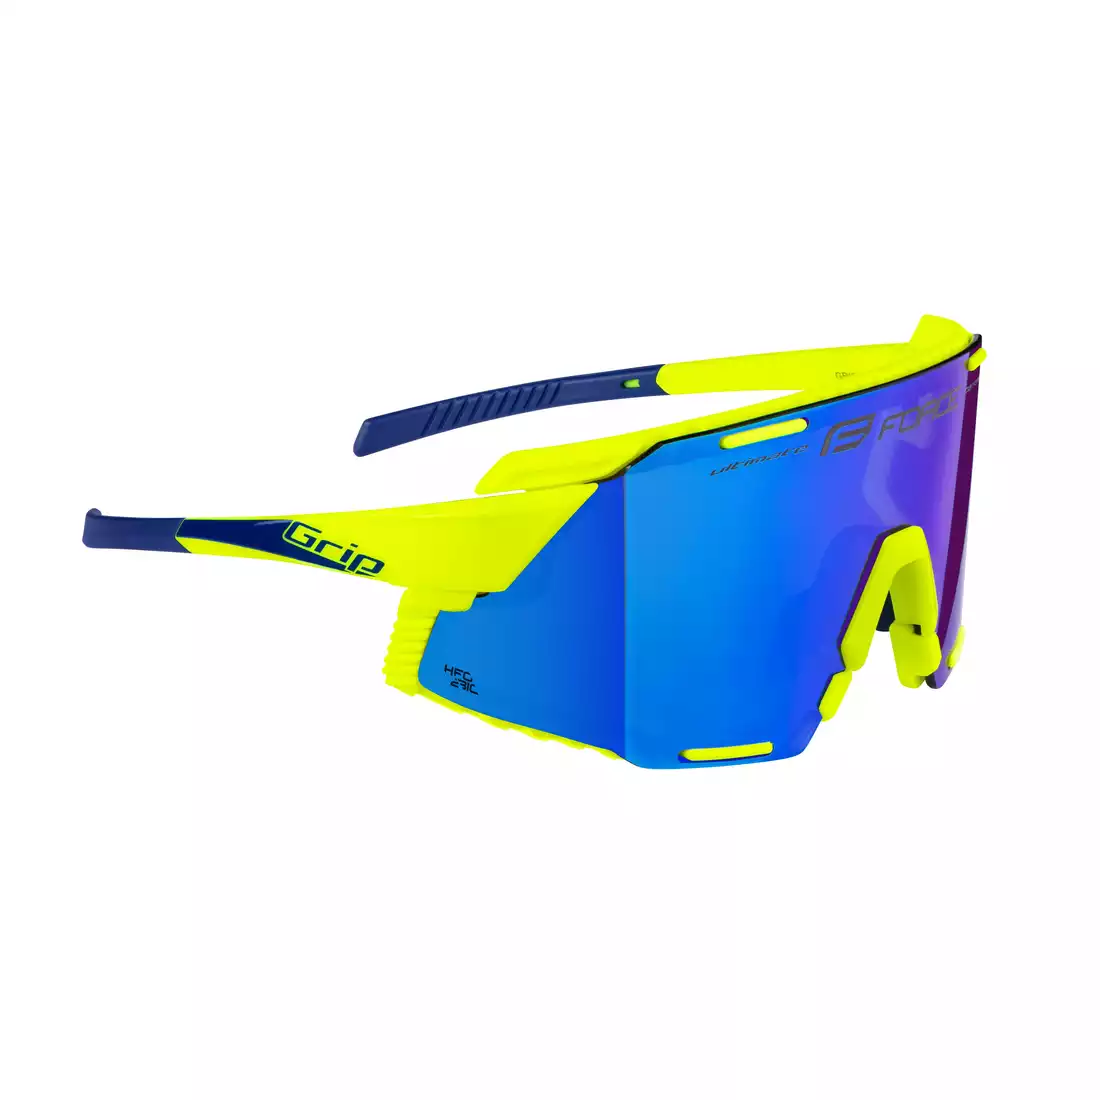 FORCE GRIP Okulary sportowe, niebieskie szkła REVO, fluo 